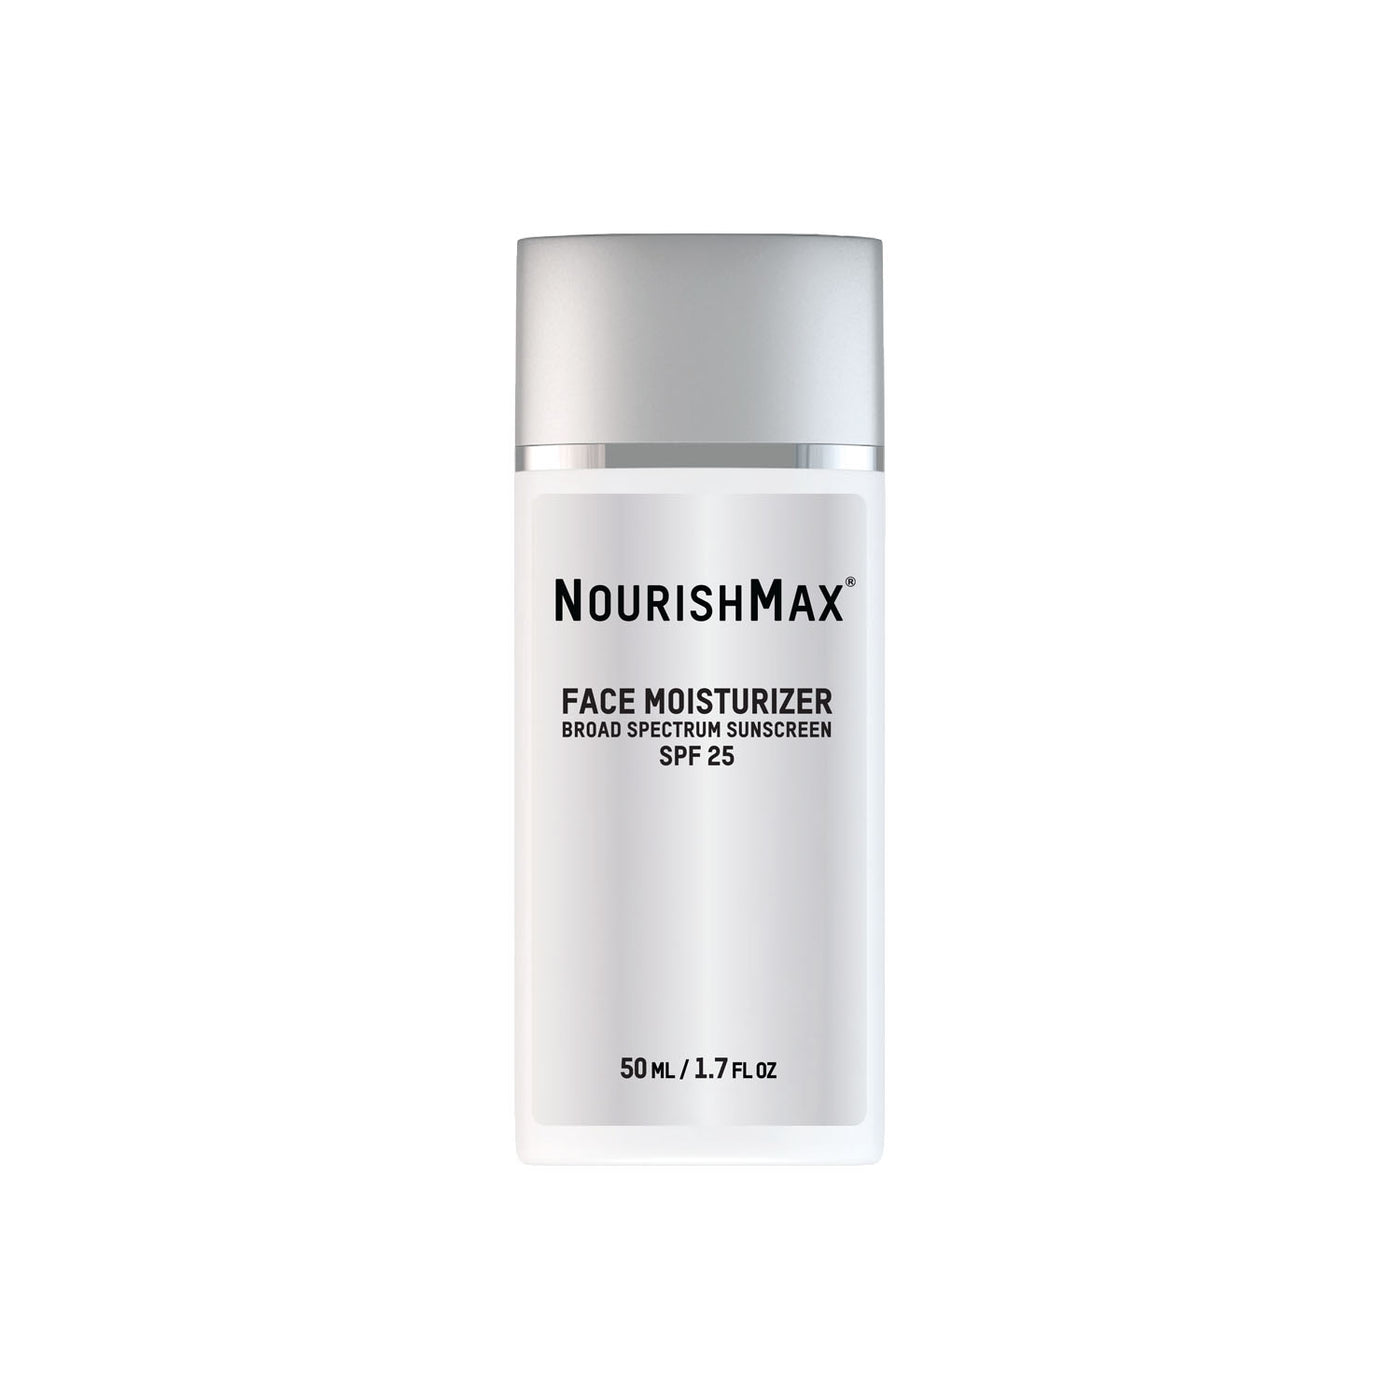 NourishMax face moisturizer Reviews